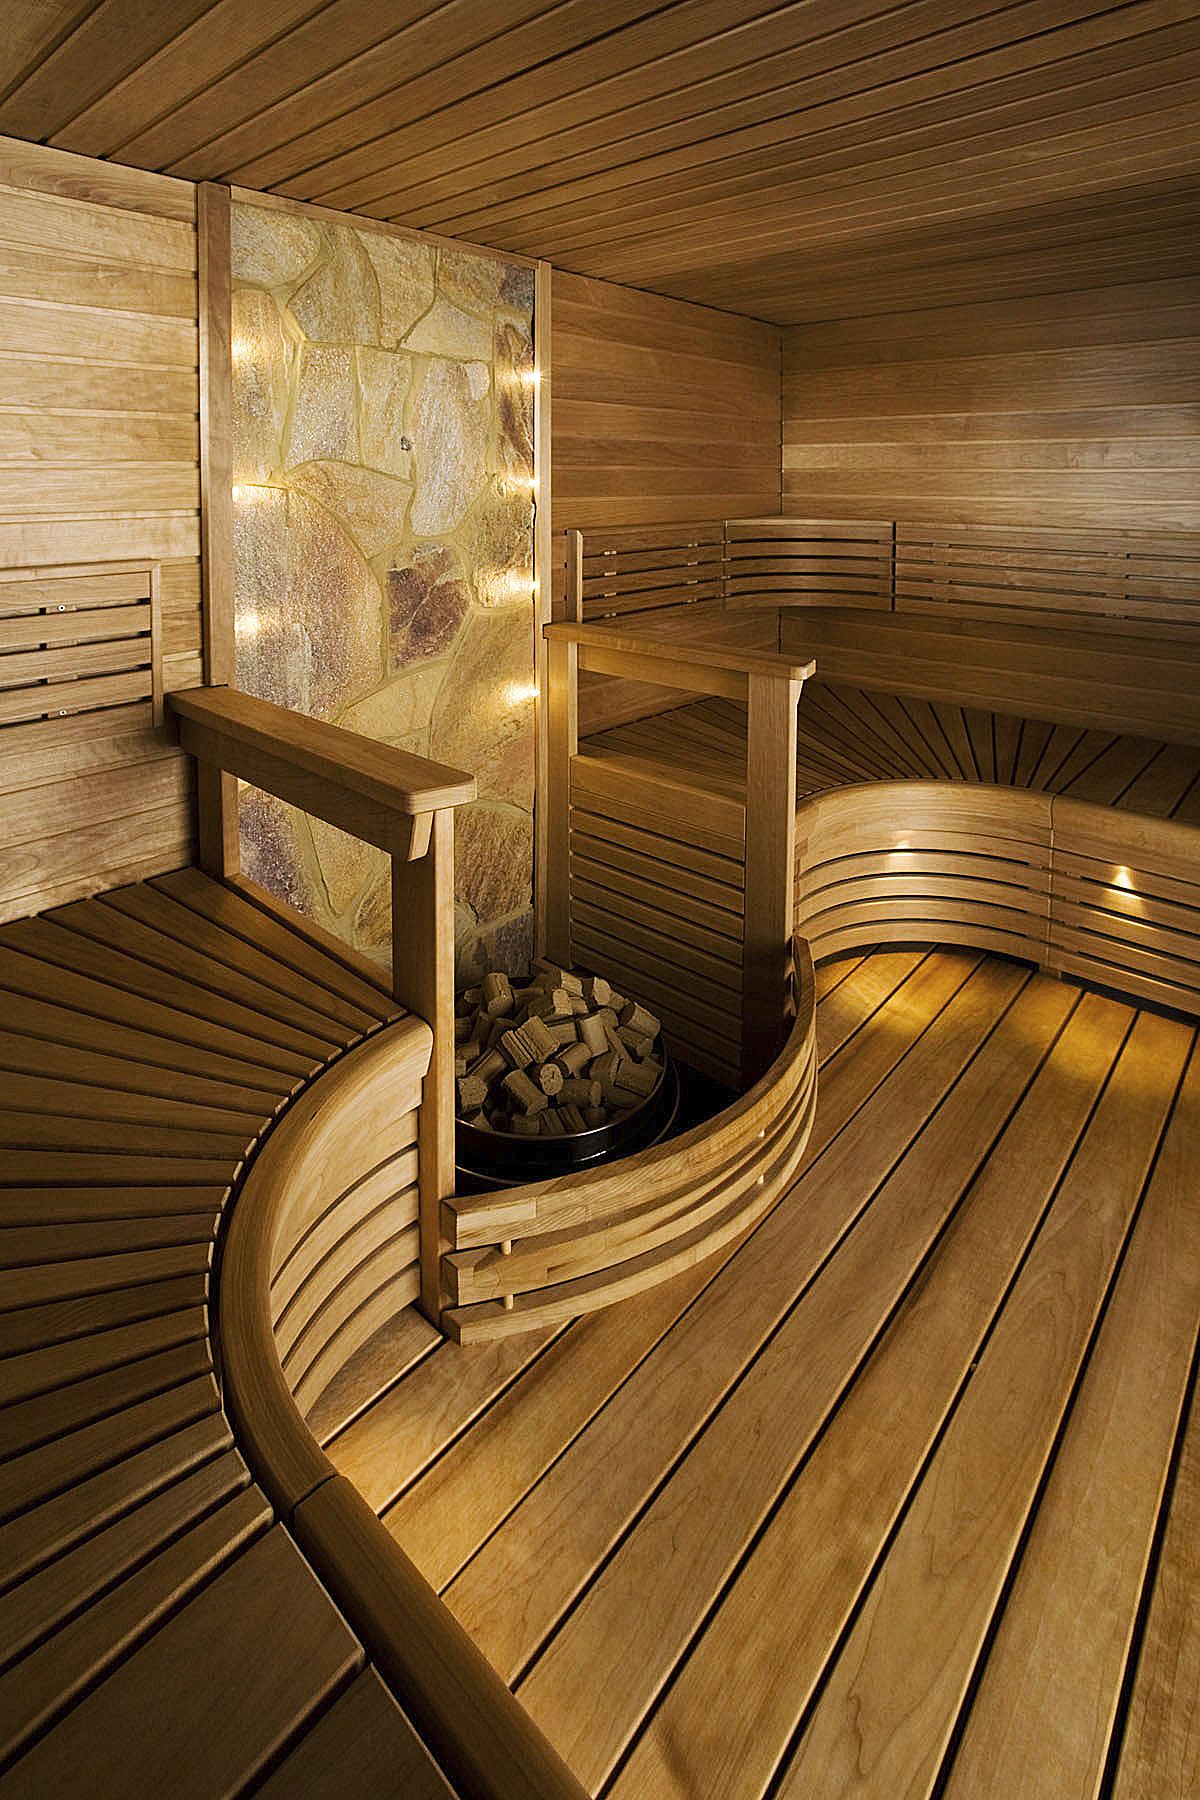 Внутренняя отделка деревянной бани: фото лучших идеи для бани своими руками